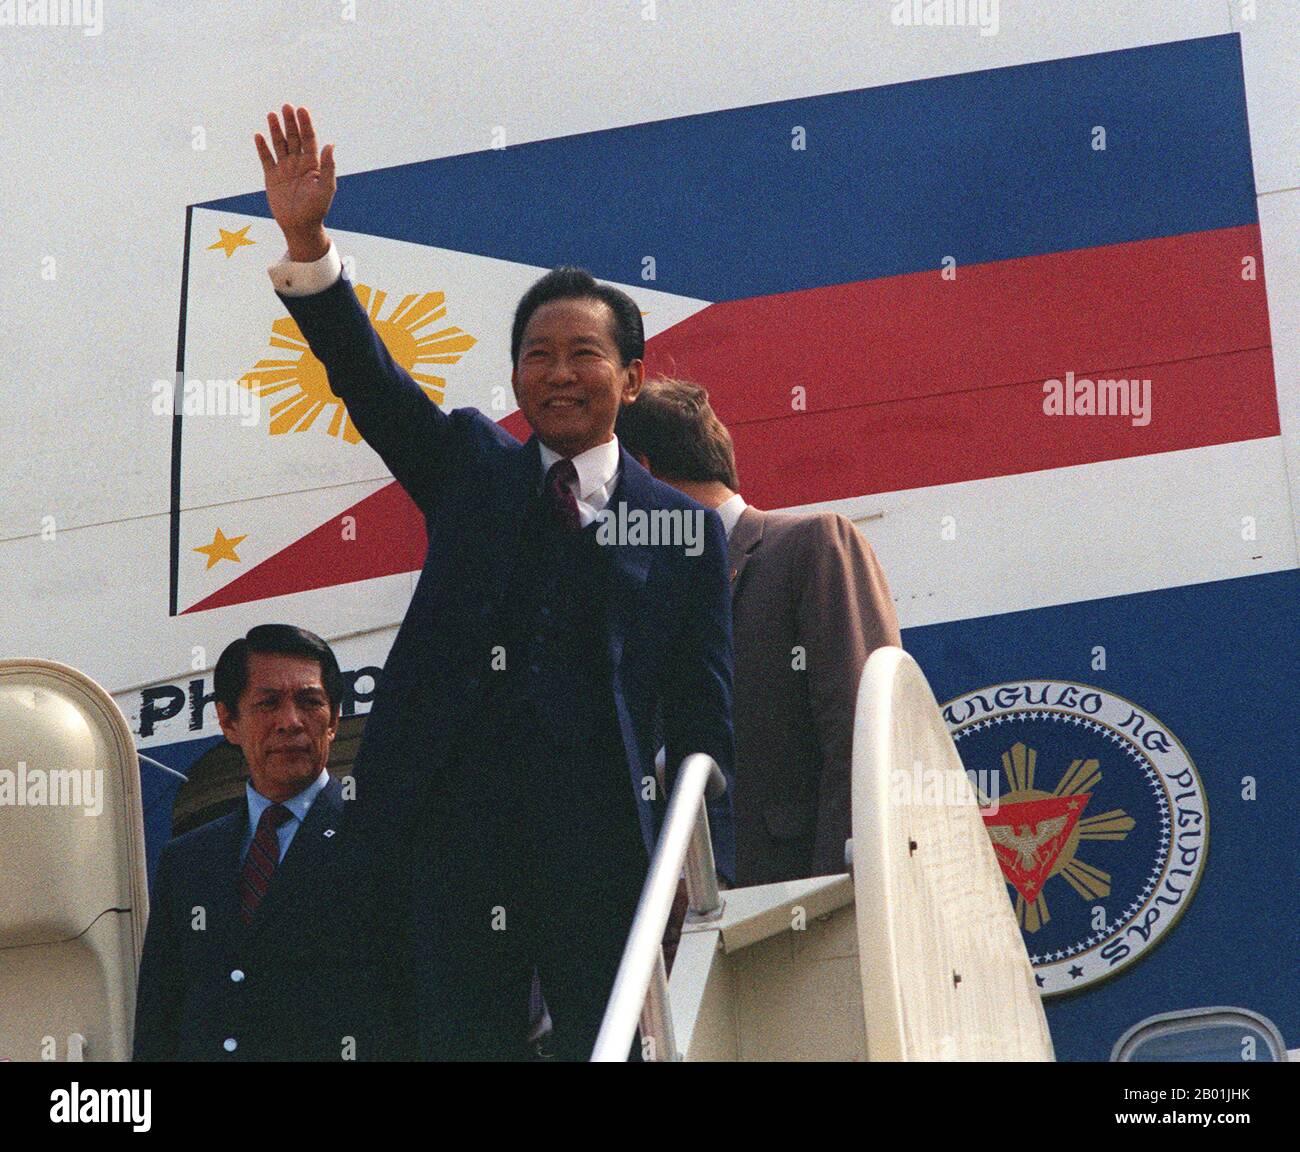 Philippinen: Präsident Ferdinand E. Marcos winkt den Menschen zu, die darauf warten, ihn bei seinem Besuch in Washington DC, USA, am 1. Mai 1983 zu begrüßen. Ferdinand Emmanuel Edralin Marcos (11. September 1917 bis 28. September 1989) war von 1965 bis 1986 der 10. Präsident der Philippinen. Er war Anwalt, Mitglied des philippinischen Repräsentantenhauses (1949-1959) und Mitglied des philippinischen Senats (1959-1965). 1983 war seine Regierung an der Ermordung seines politischen Hauptgegners Benigno Aquino Jr. beteiligt Stockfoto